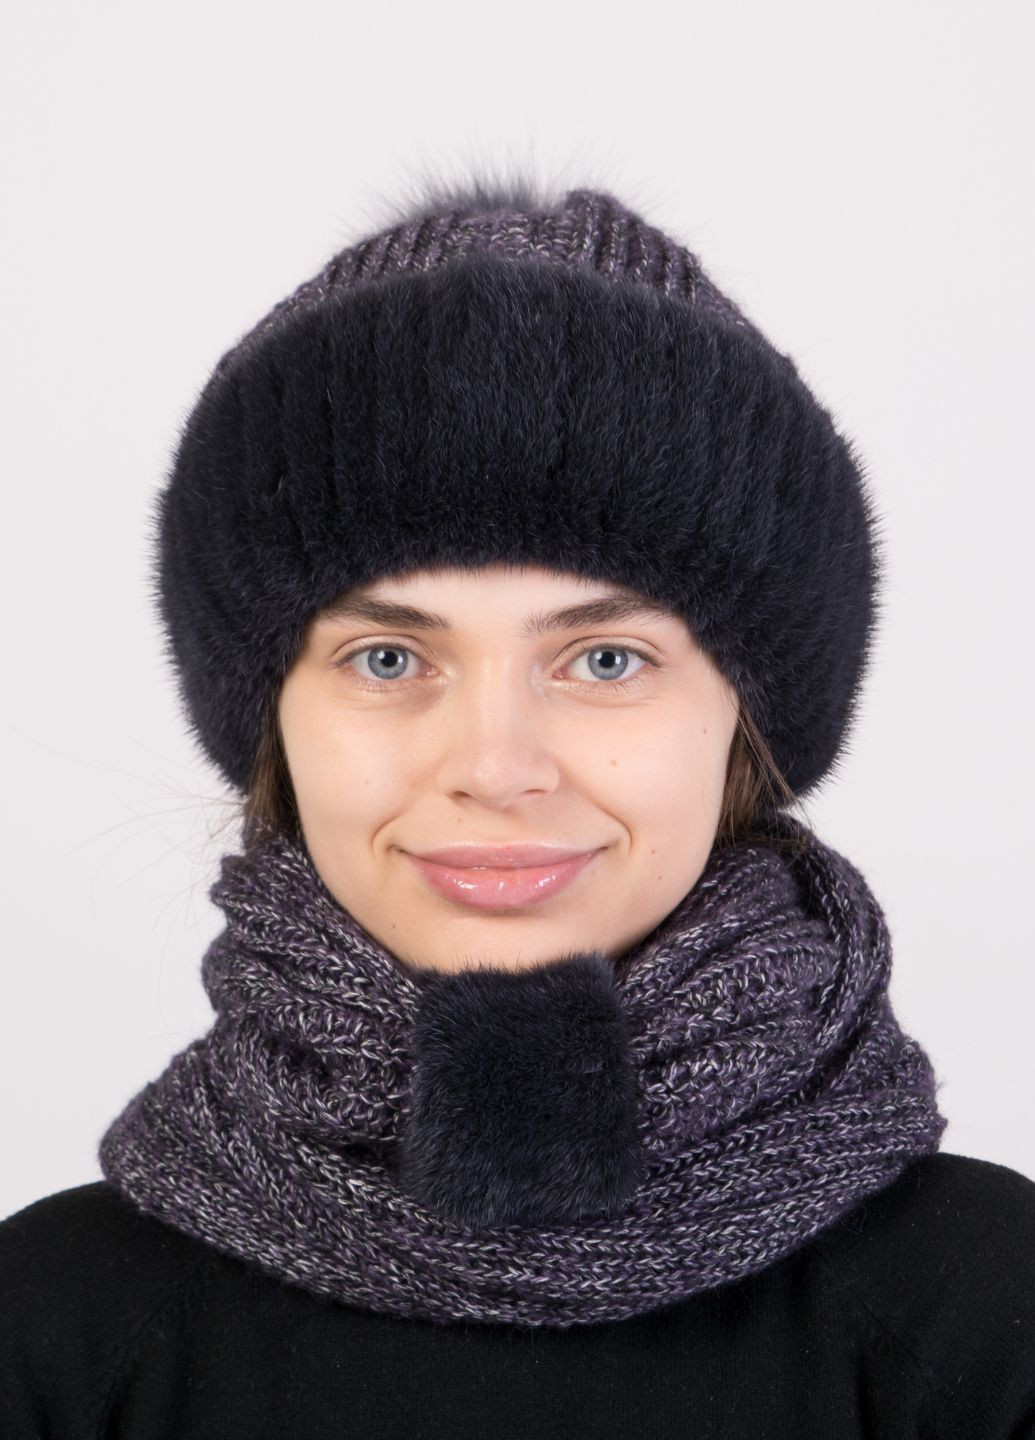 Вязаный норковый комплект шапка + шарф Меховой Стиль снуд (271556759)